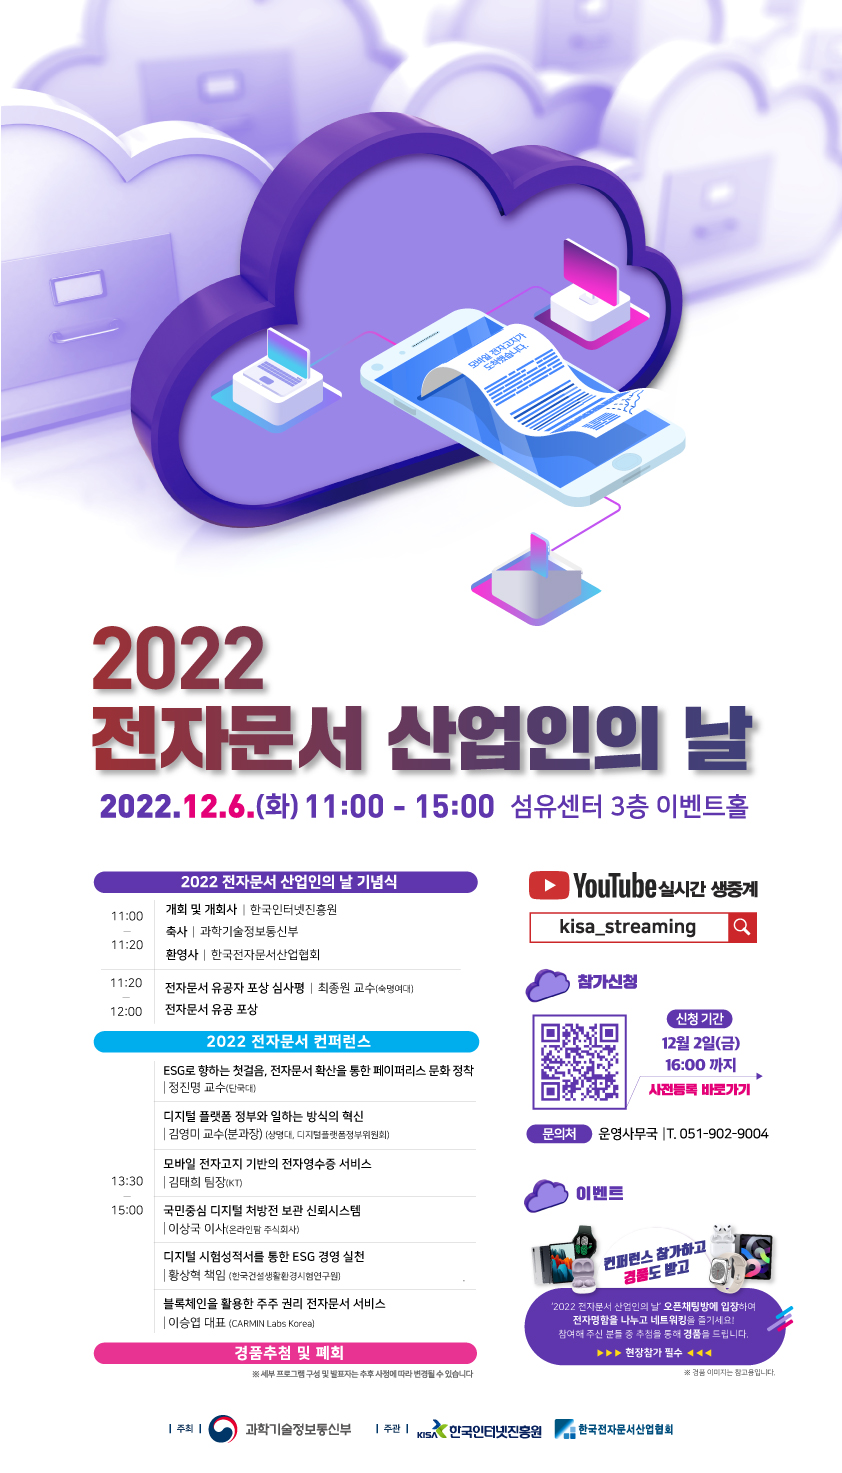 2022 전자문서 산업인의 날 행사 개최